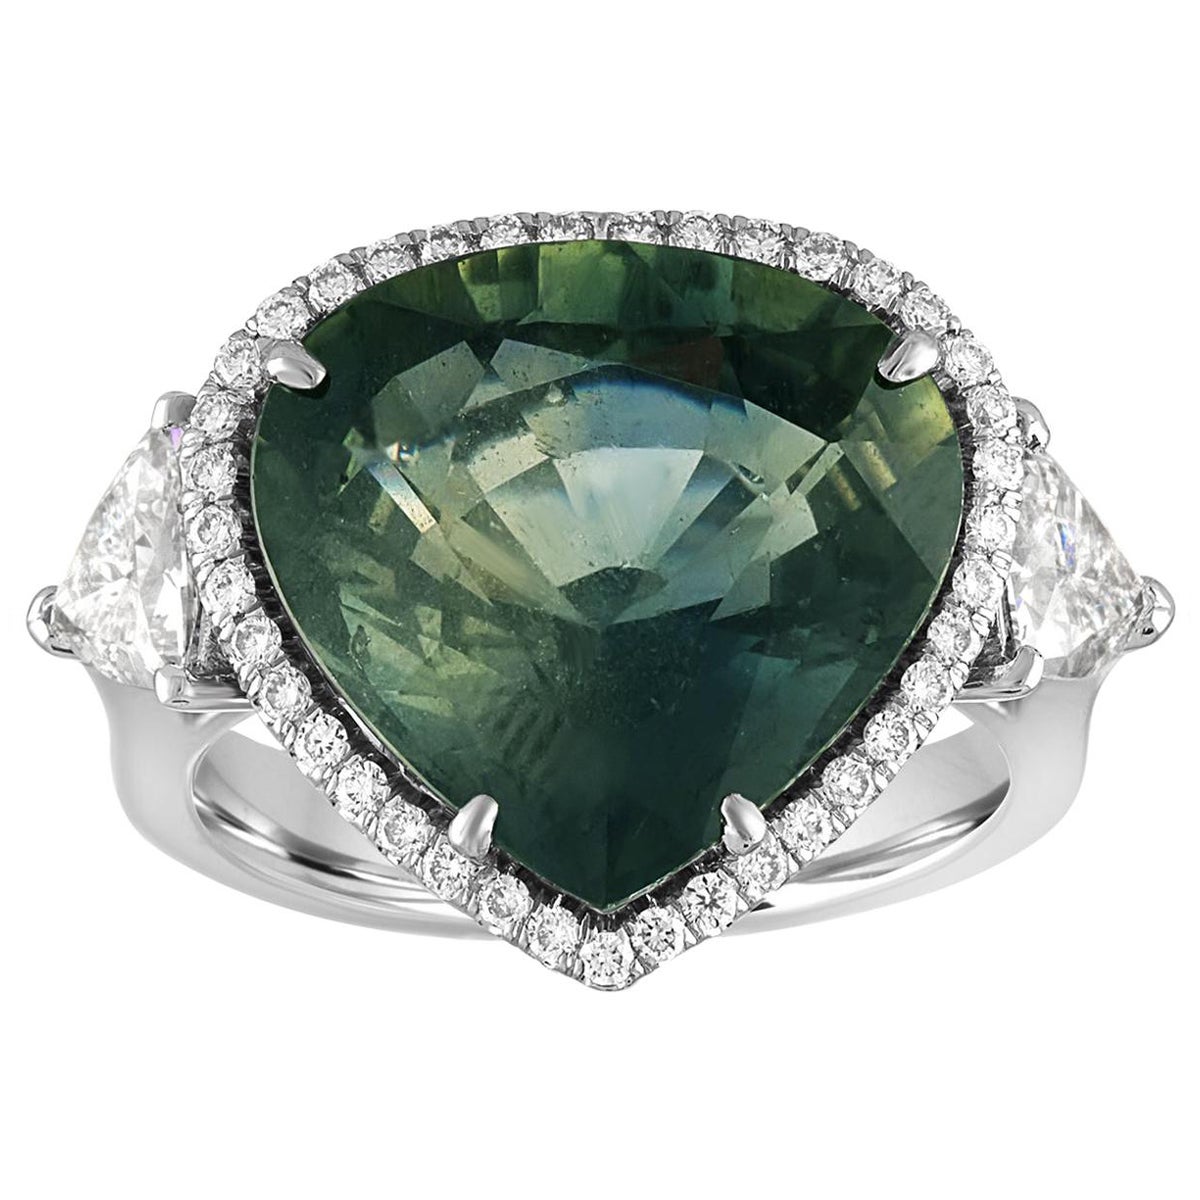 Bague avec diamant saphir vert bleuté certifié AGL de 11,61 carats sans chaleur